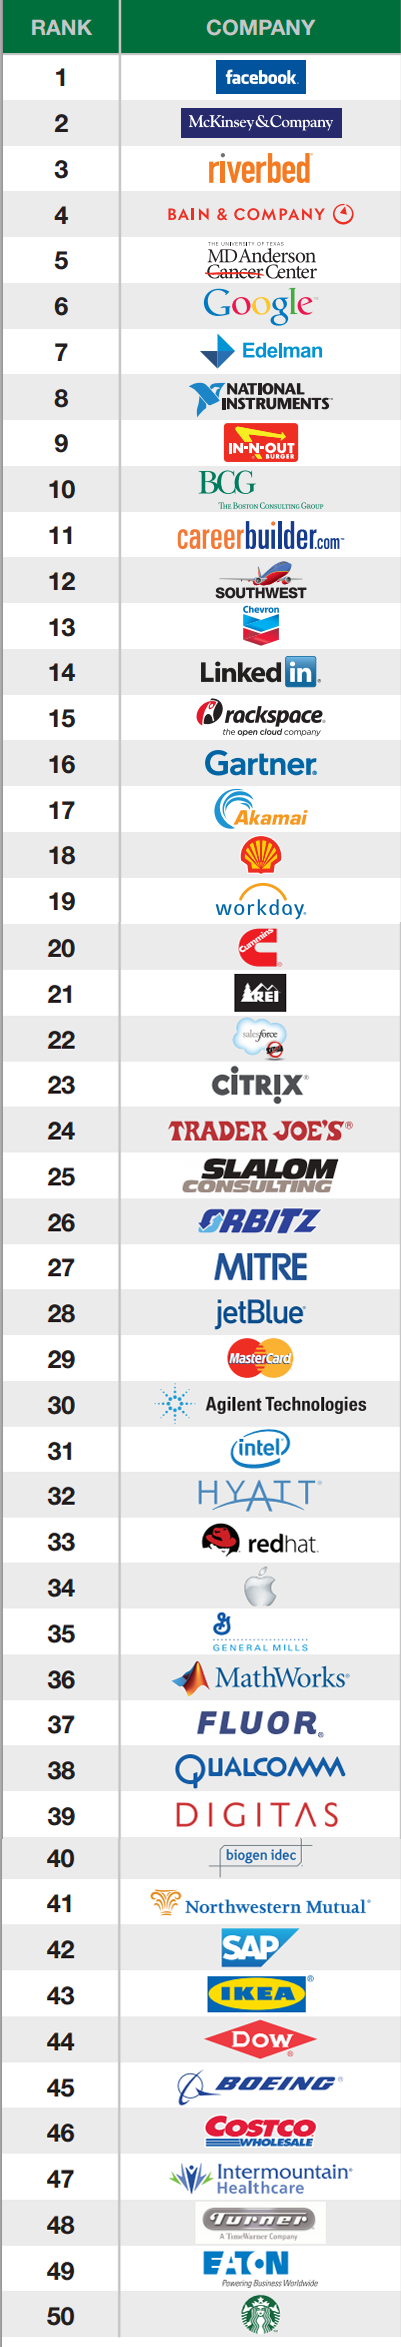 50 melhores empresas para trabalhar 2013